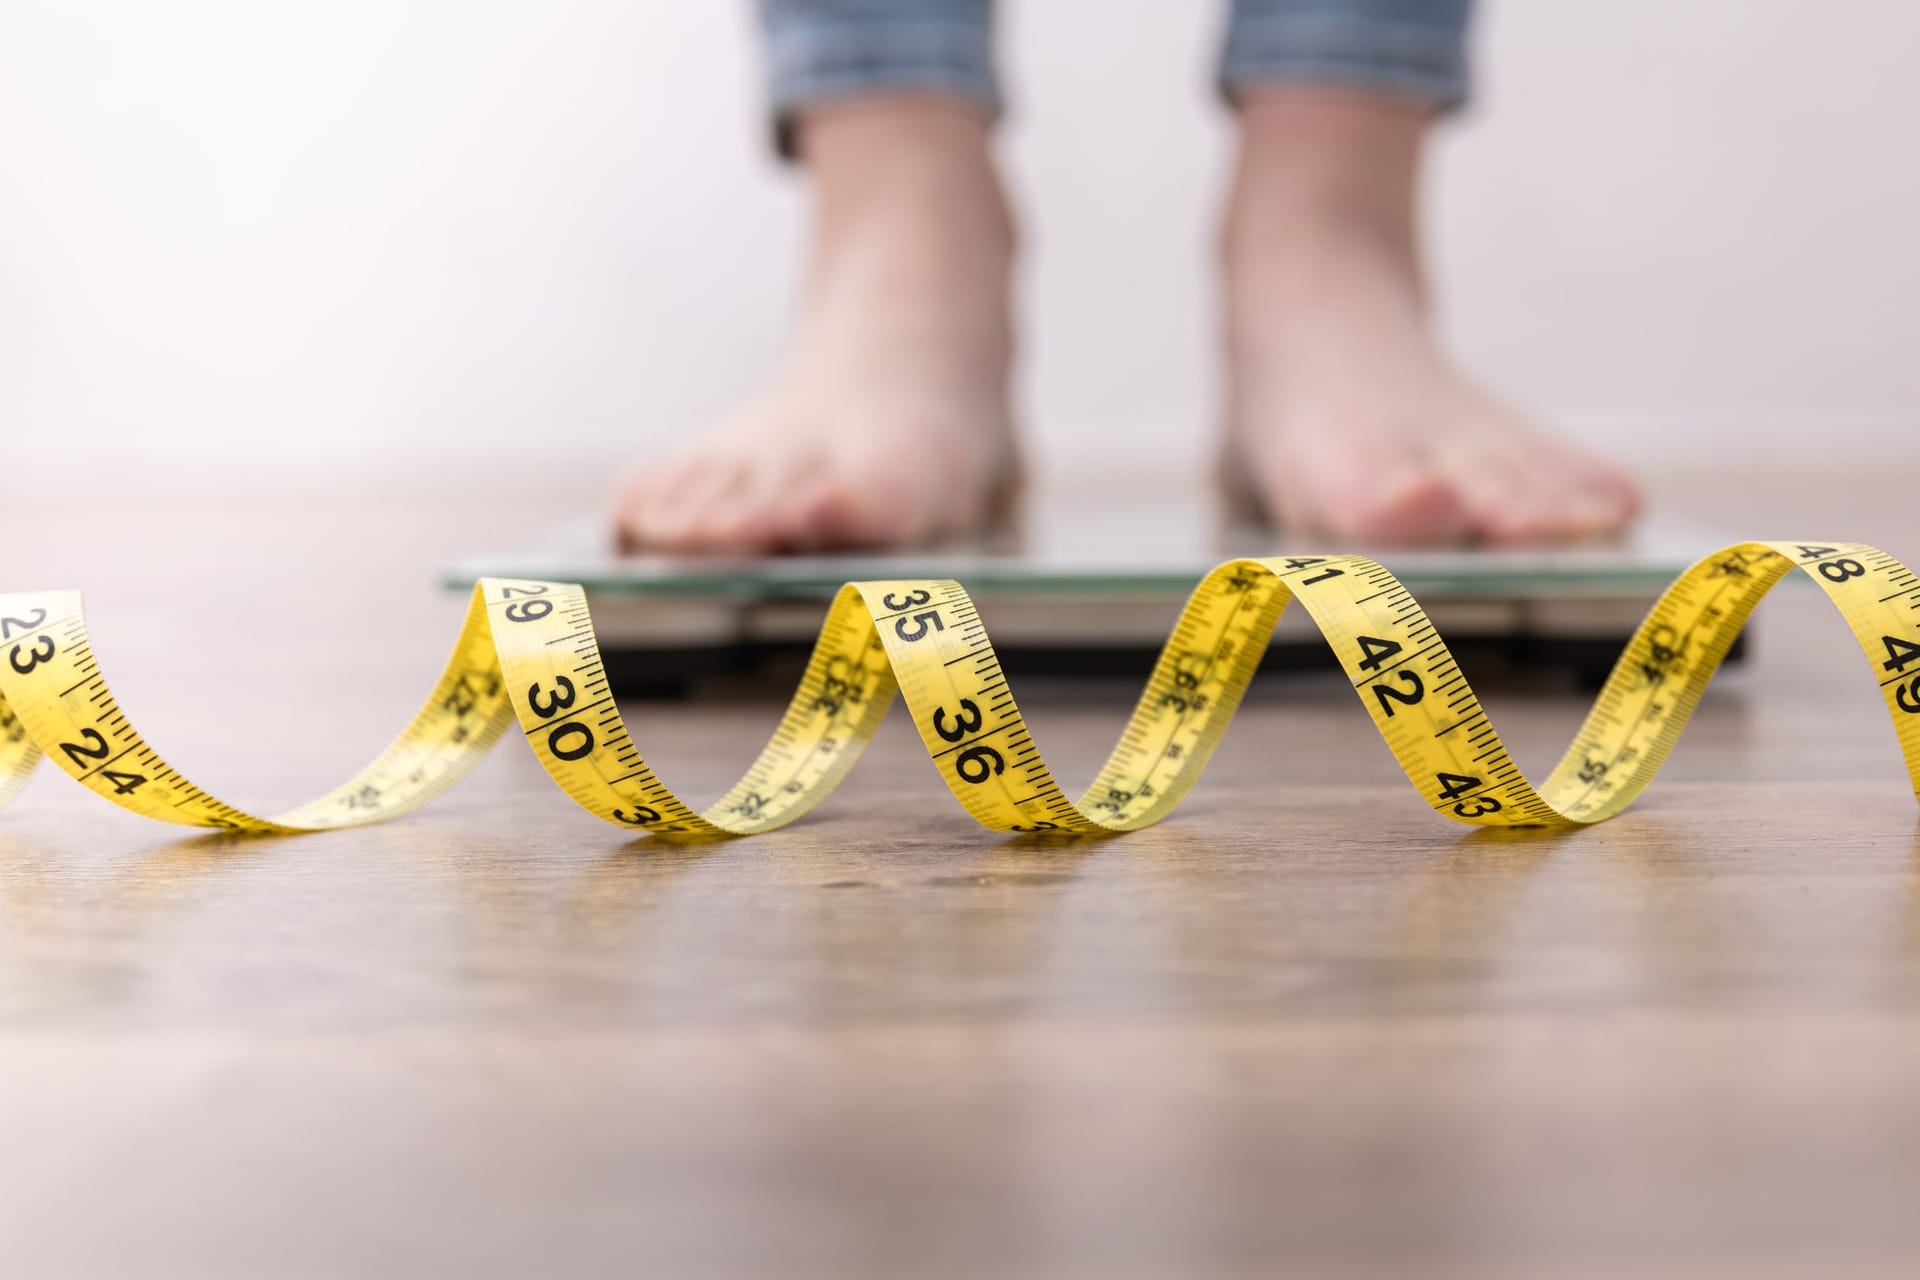 Neben dem BMI ist auch der Fettanteil des Bauches zu berücksichtigen, da ein hoher Anteil an Bauchfett mehr gesundheitliche Risiken birgt als Körperfett an anderen Stellen. Ein Bauchumfang von 102 cm bei Männern und 88 cm bei Frauen deutet auf ein stark erhöhten Anteil an Bauchfett hin.